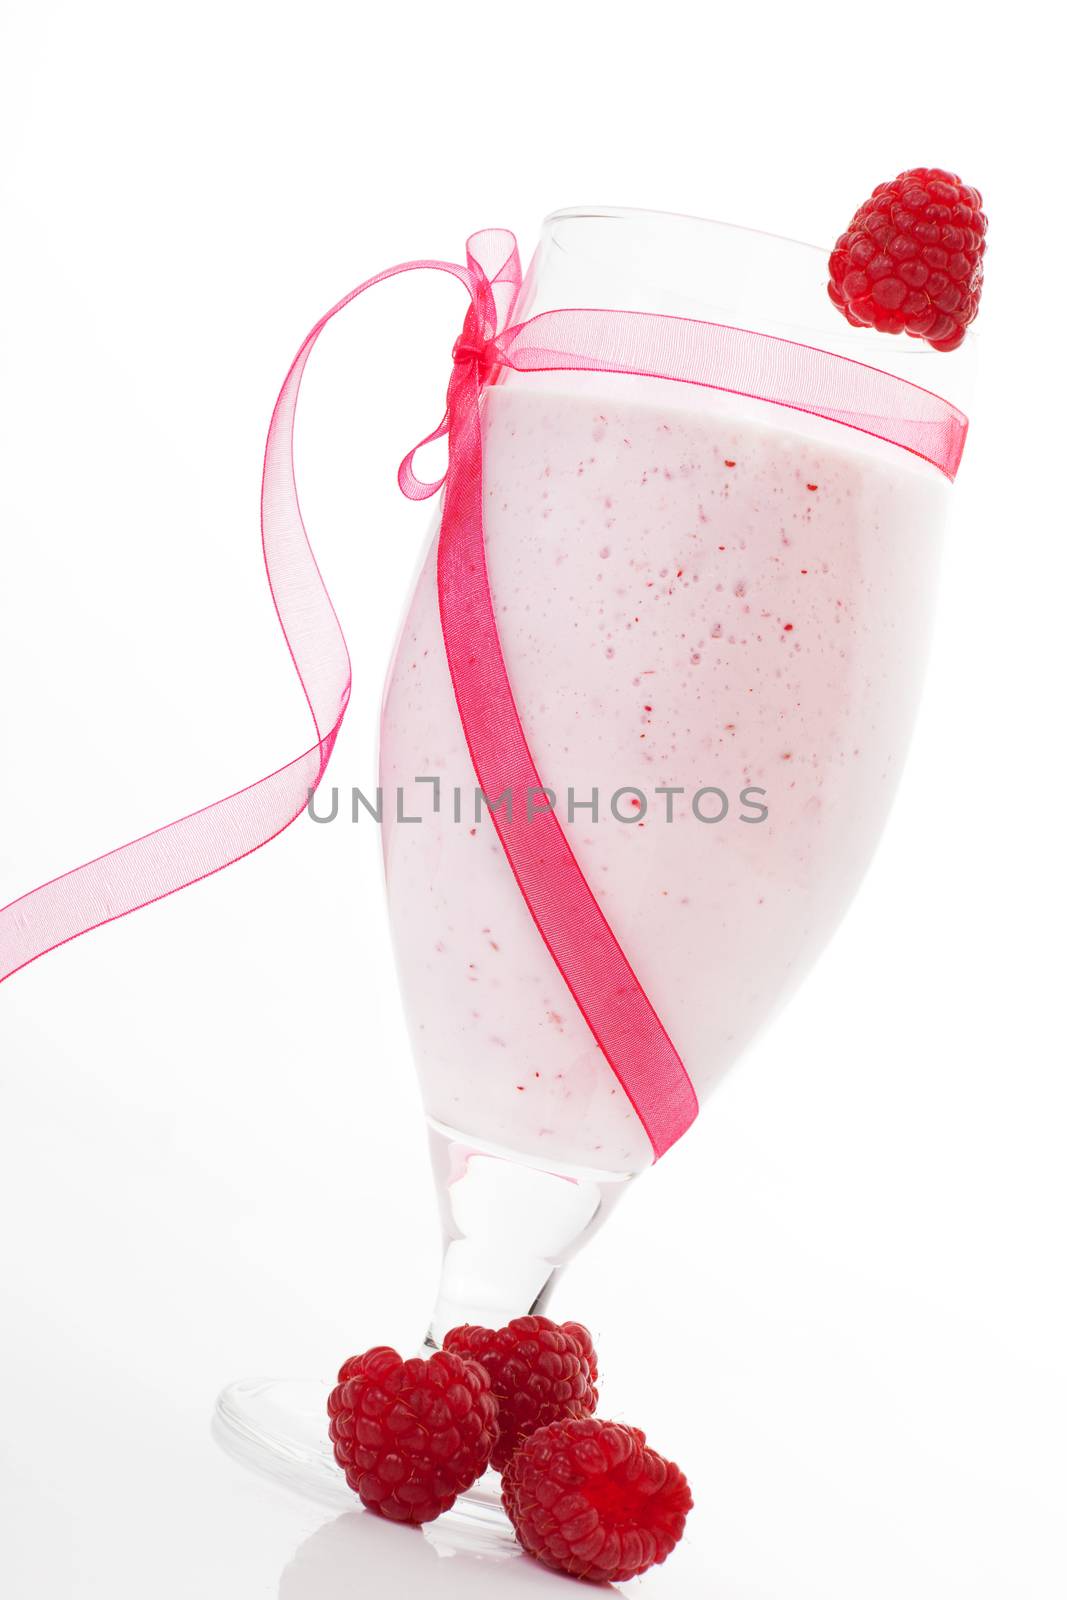 Raspberry shake. by eskymaks